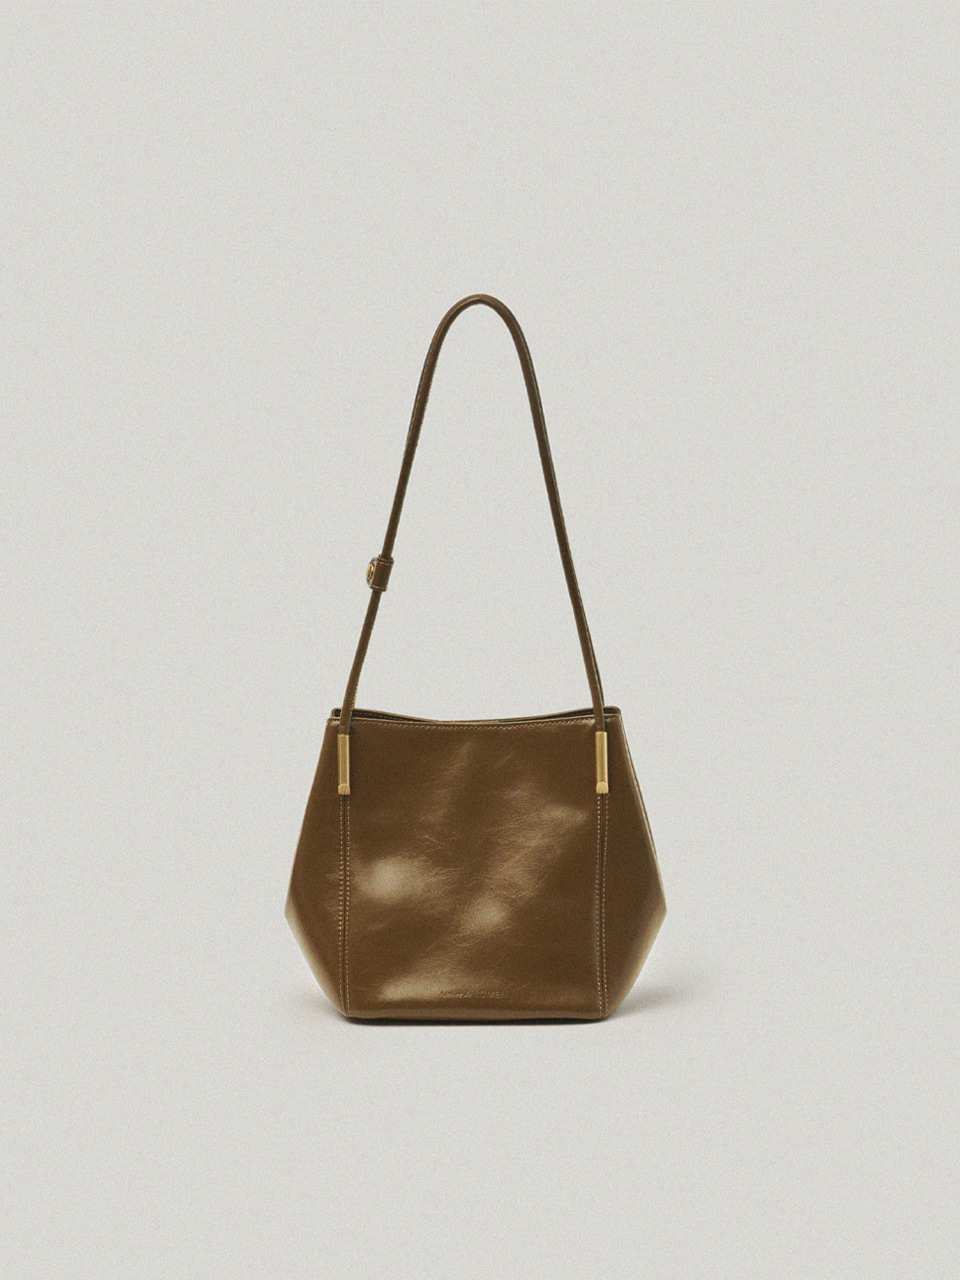 Marron Bag / Golden Brown